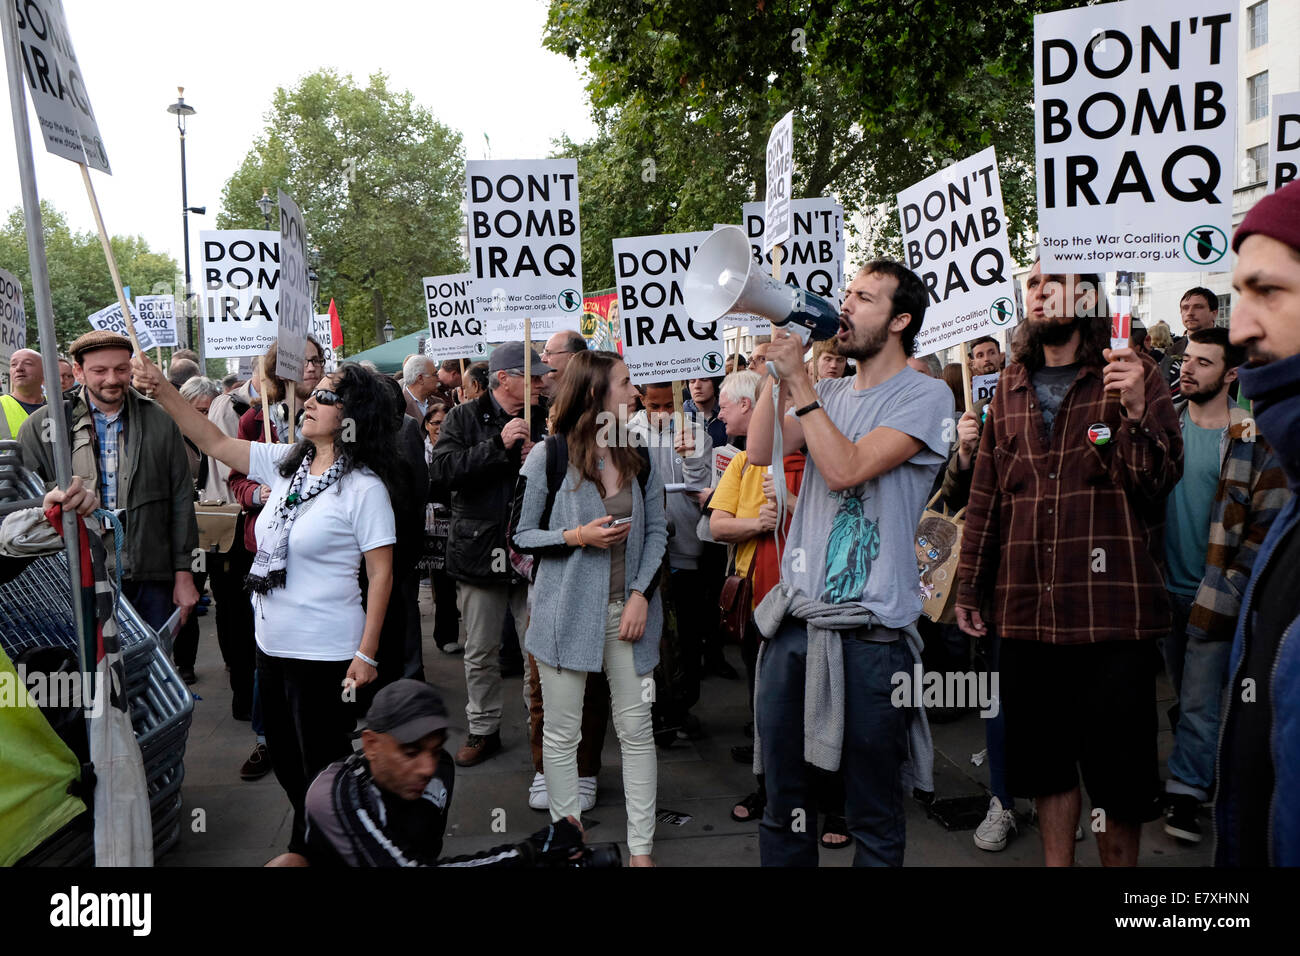 Demonstranten gegen UK-Beteiligung an Bombardierung ISIS im Irak und in Syrien, schreien Parolen, Zentrum von London. Stockfoto